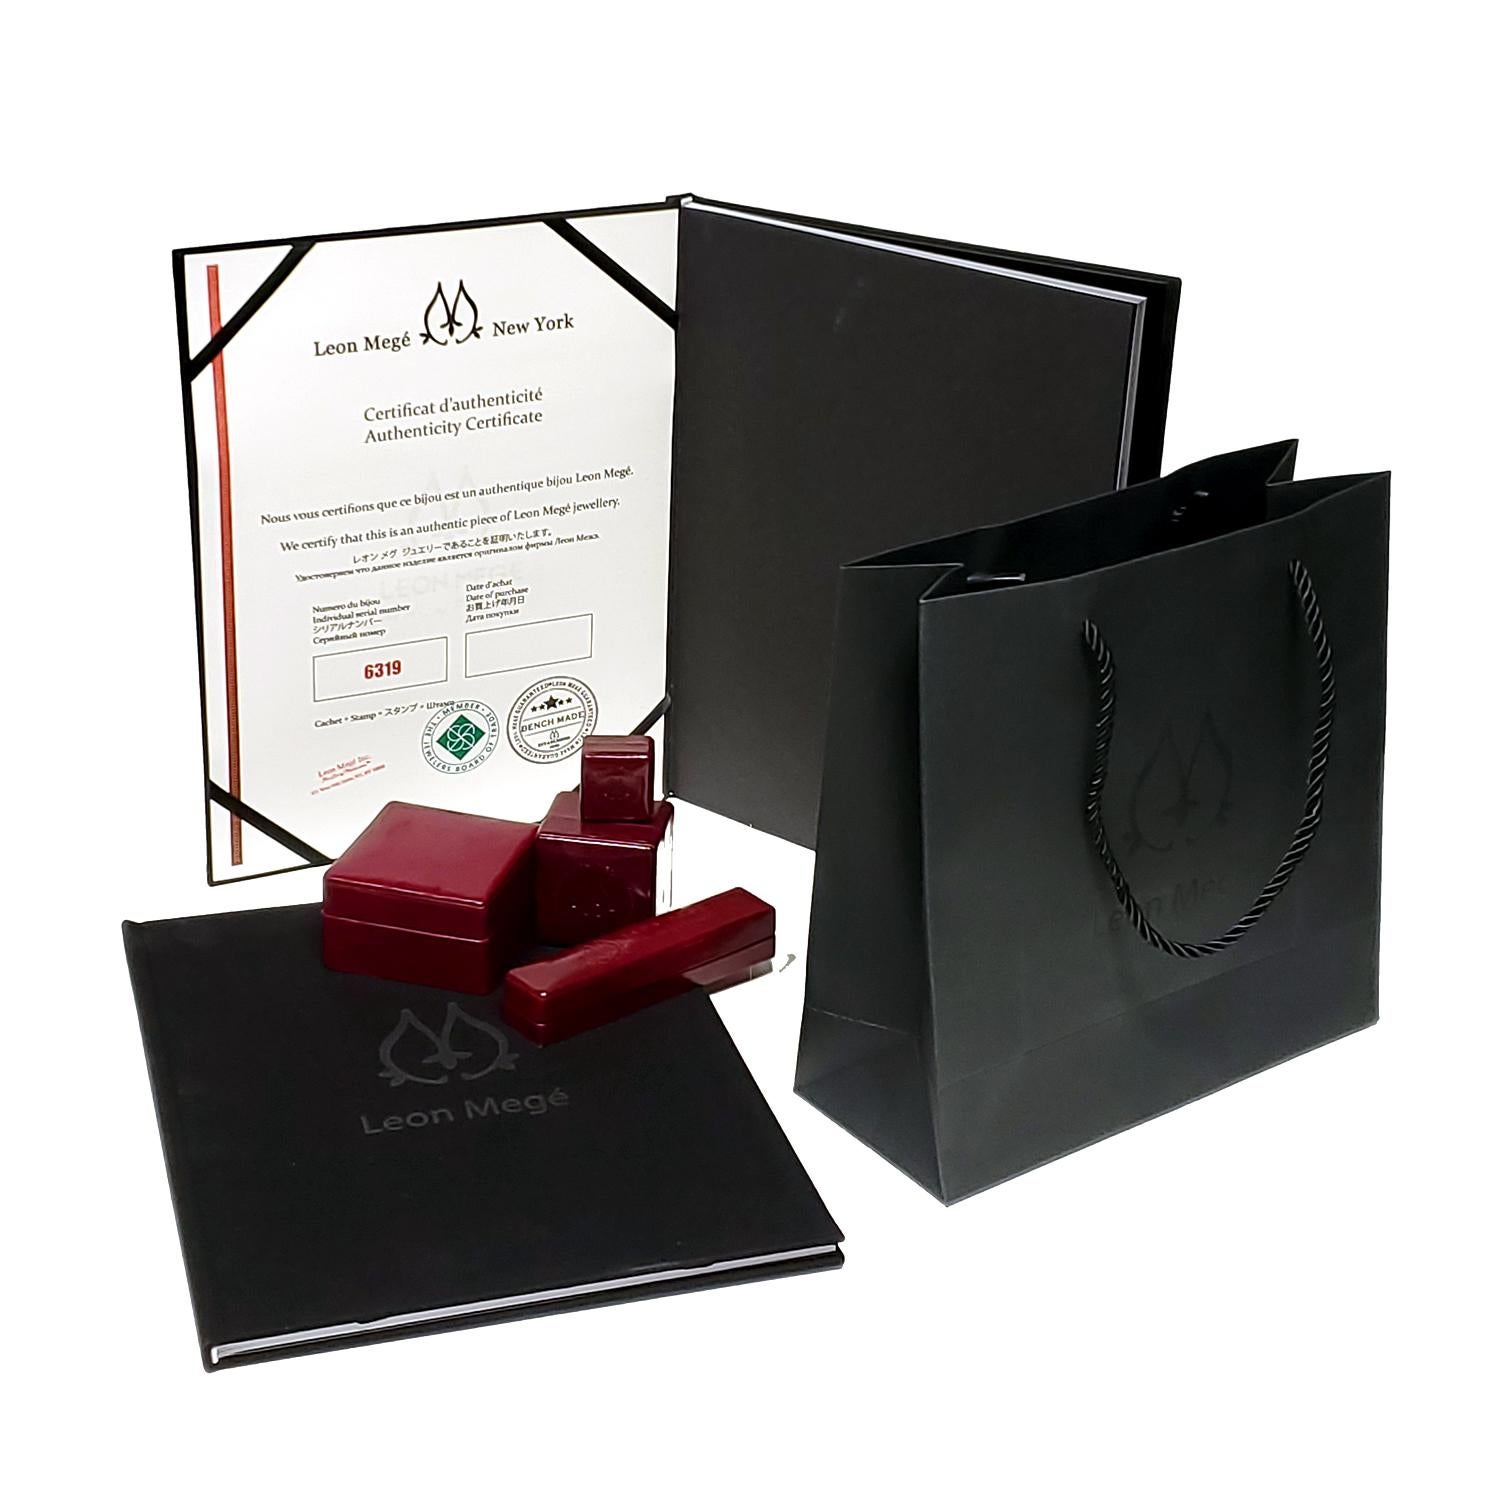 Leon Megé Platinum Double Halo Ring with 1.01-carat Antique Cut Cushion Diamond For Sale 1